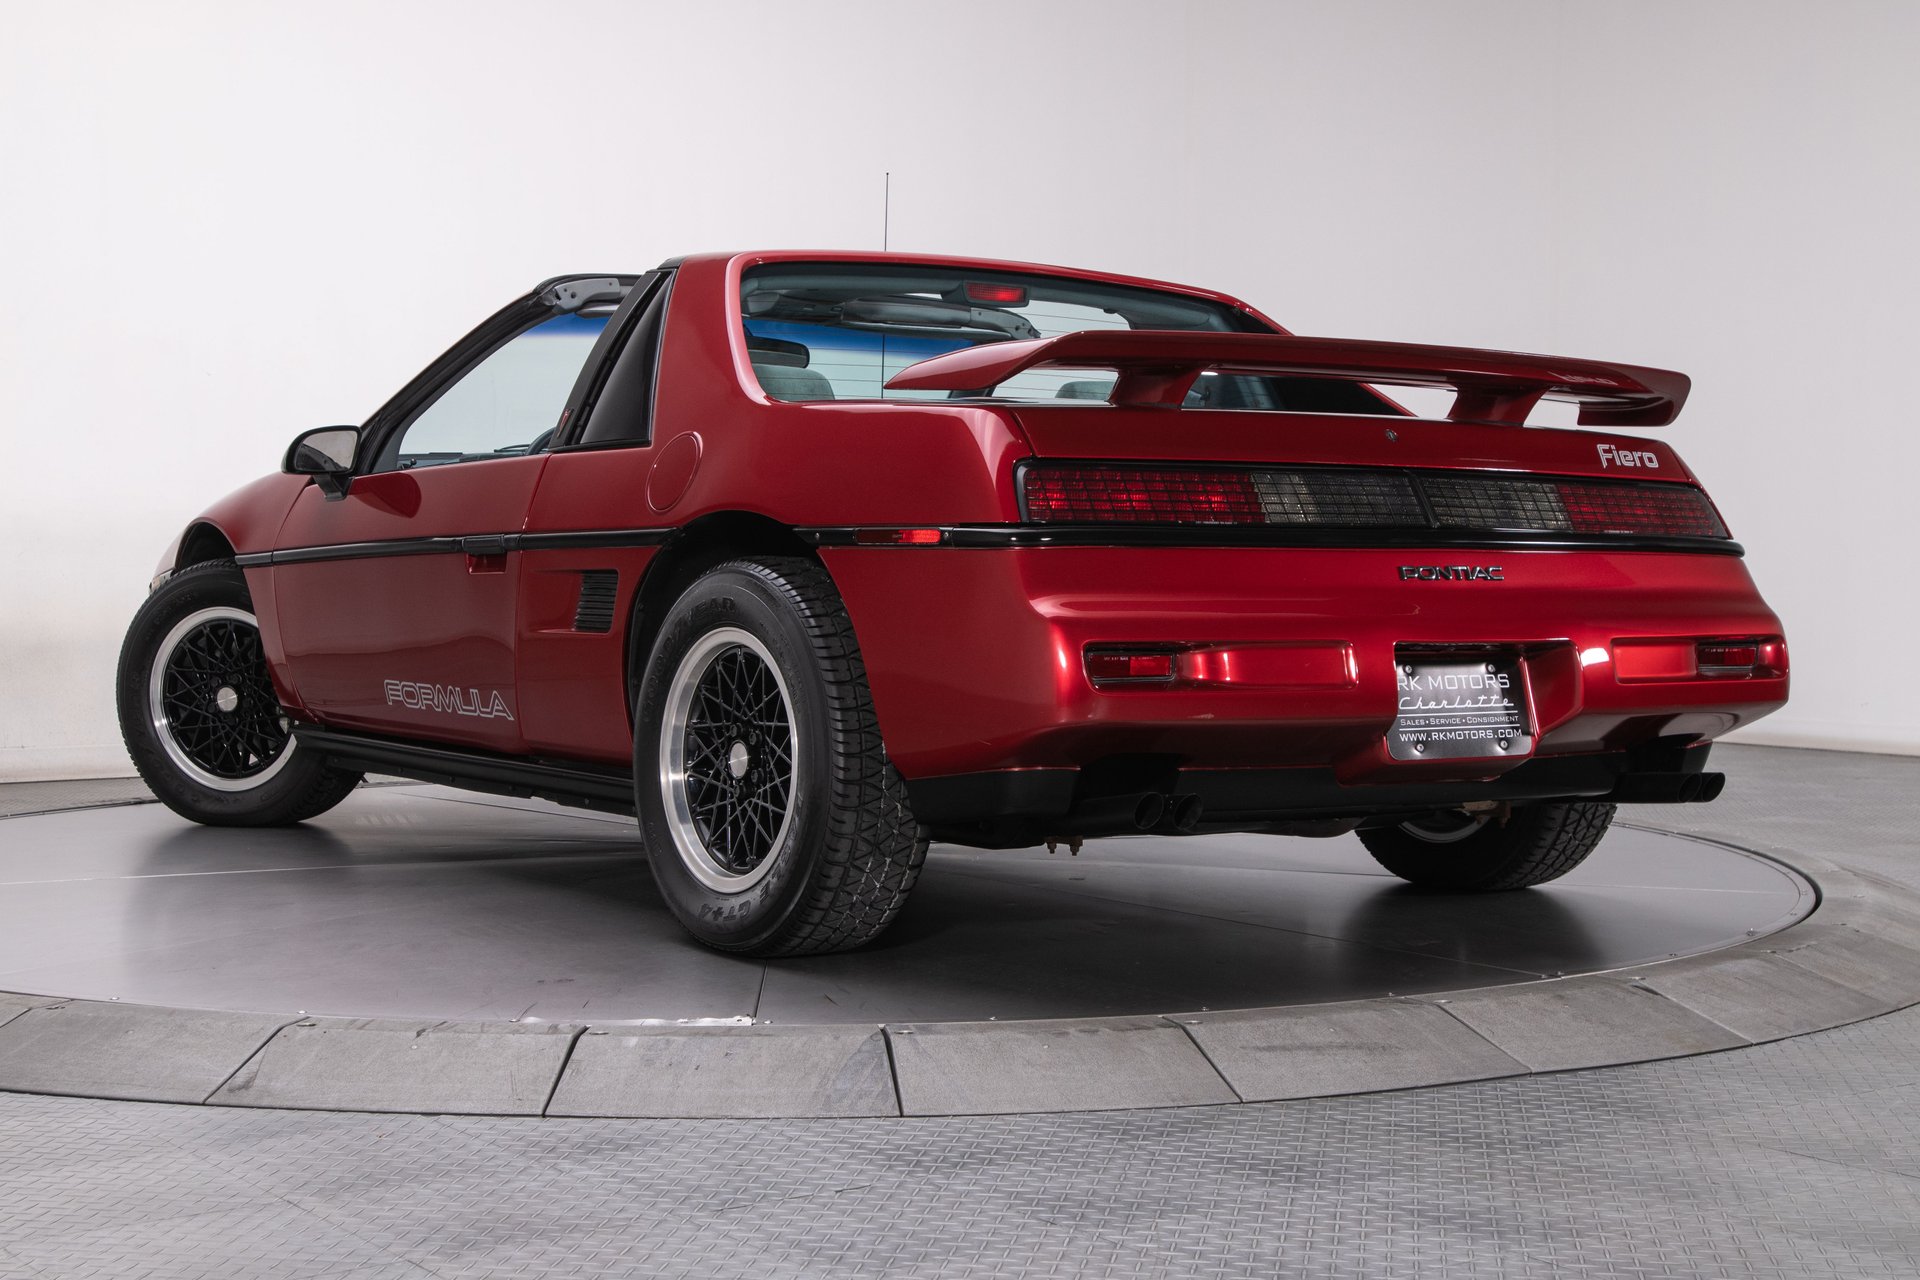 For Sale 1988 Pontiac Fiero